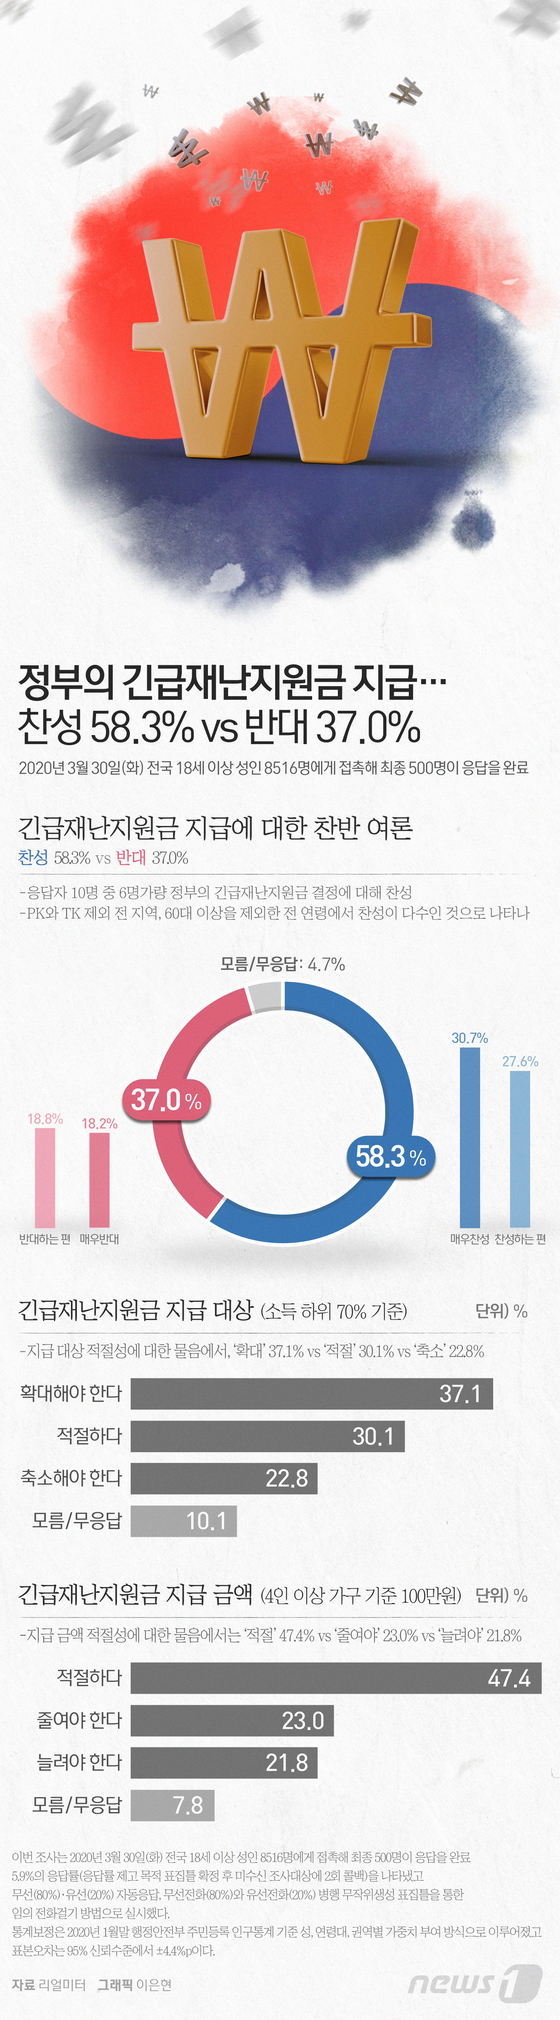 [그래픽뉴스] 정부의 긴급재난지원금 지급에 대한 찬반 여론